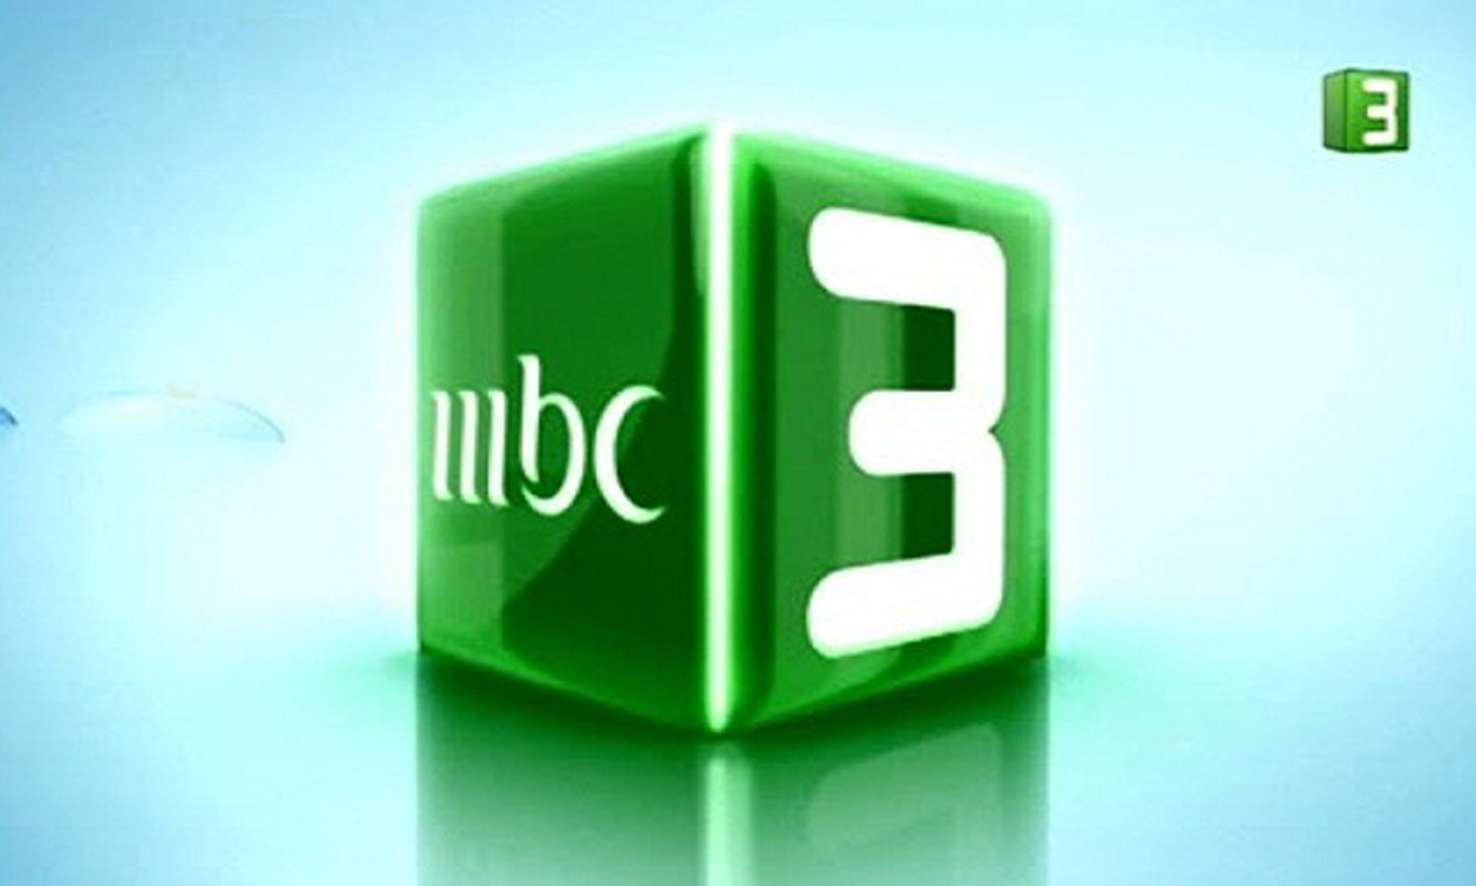 تردد قناة ام بي سي 3 على نايل سات وتردد قناة ميكي للكرتون